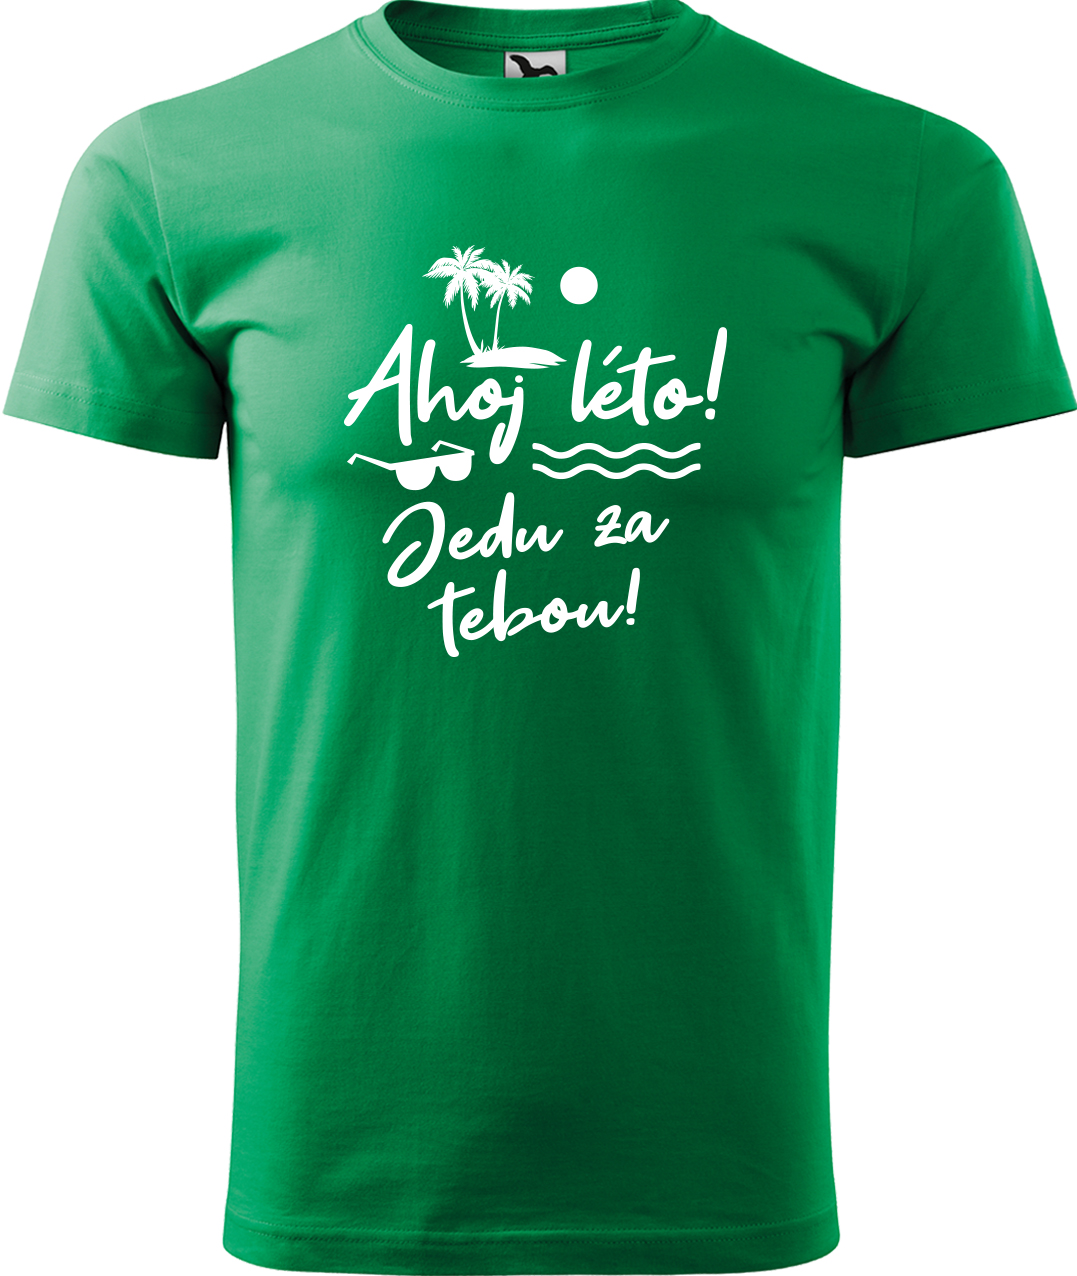 Pánské cestovatelské tričko - Ahoj léto! Jedu za tebou! Velikost: 3XL, Barva: Středně zelená (16), Střih: pánský